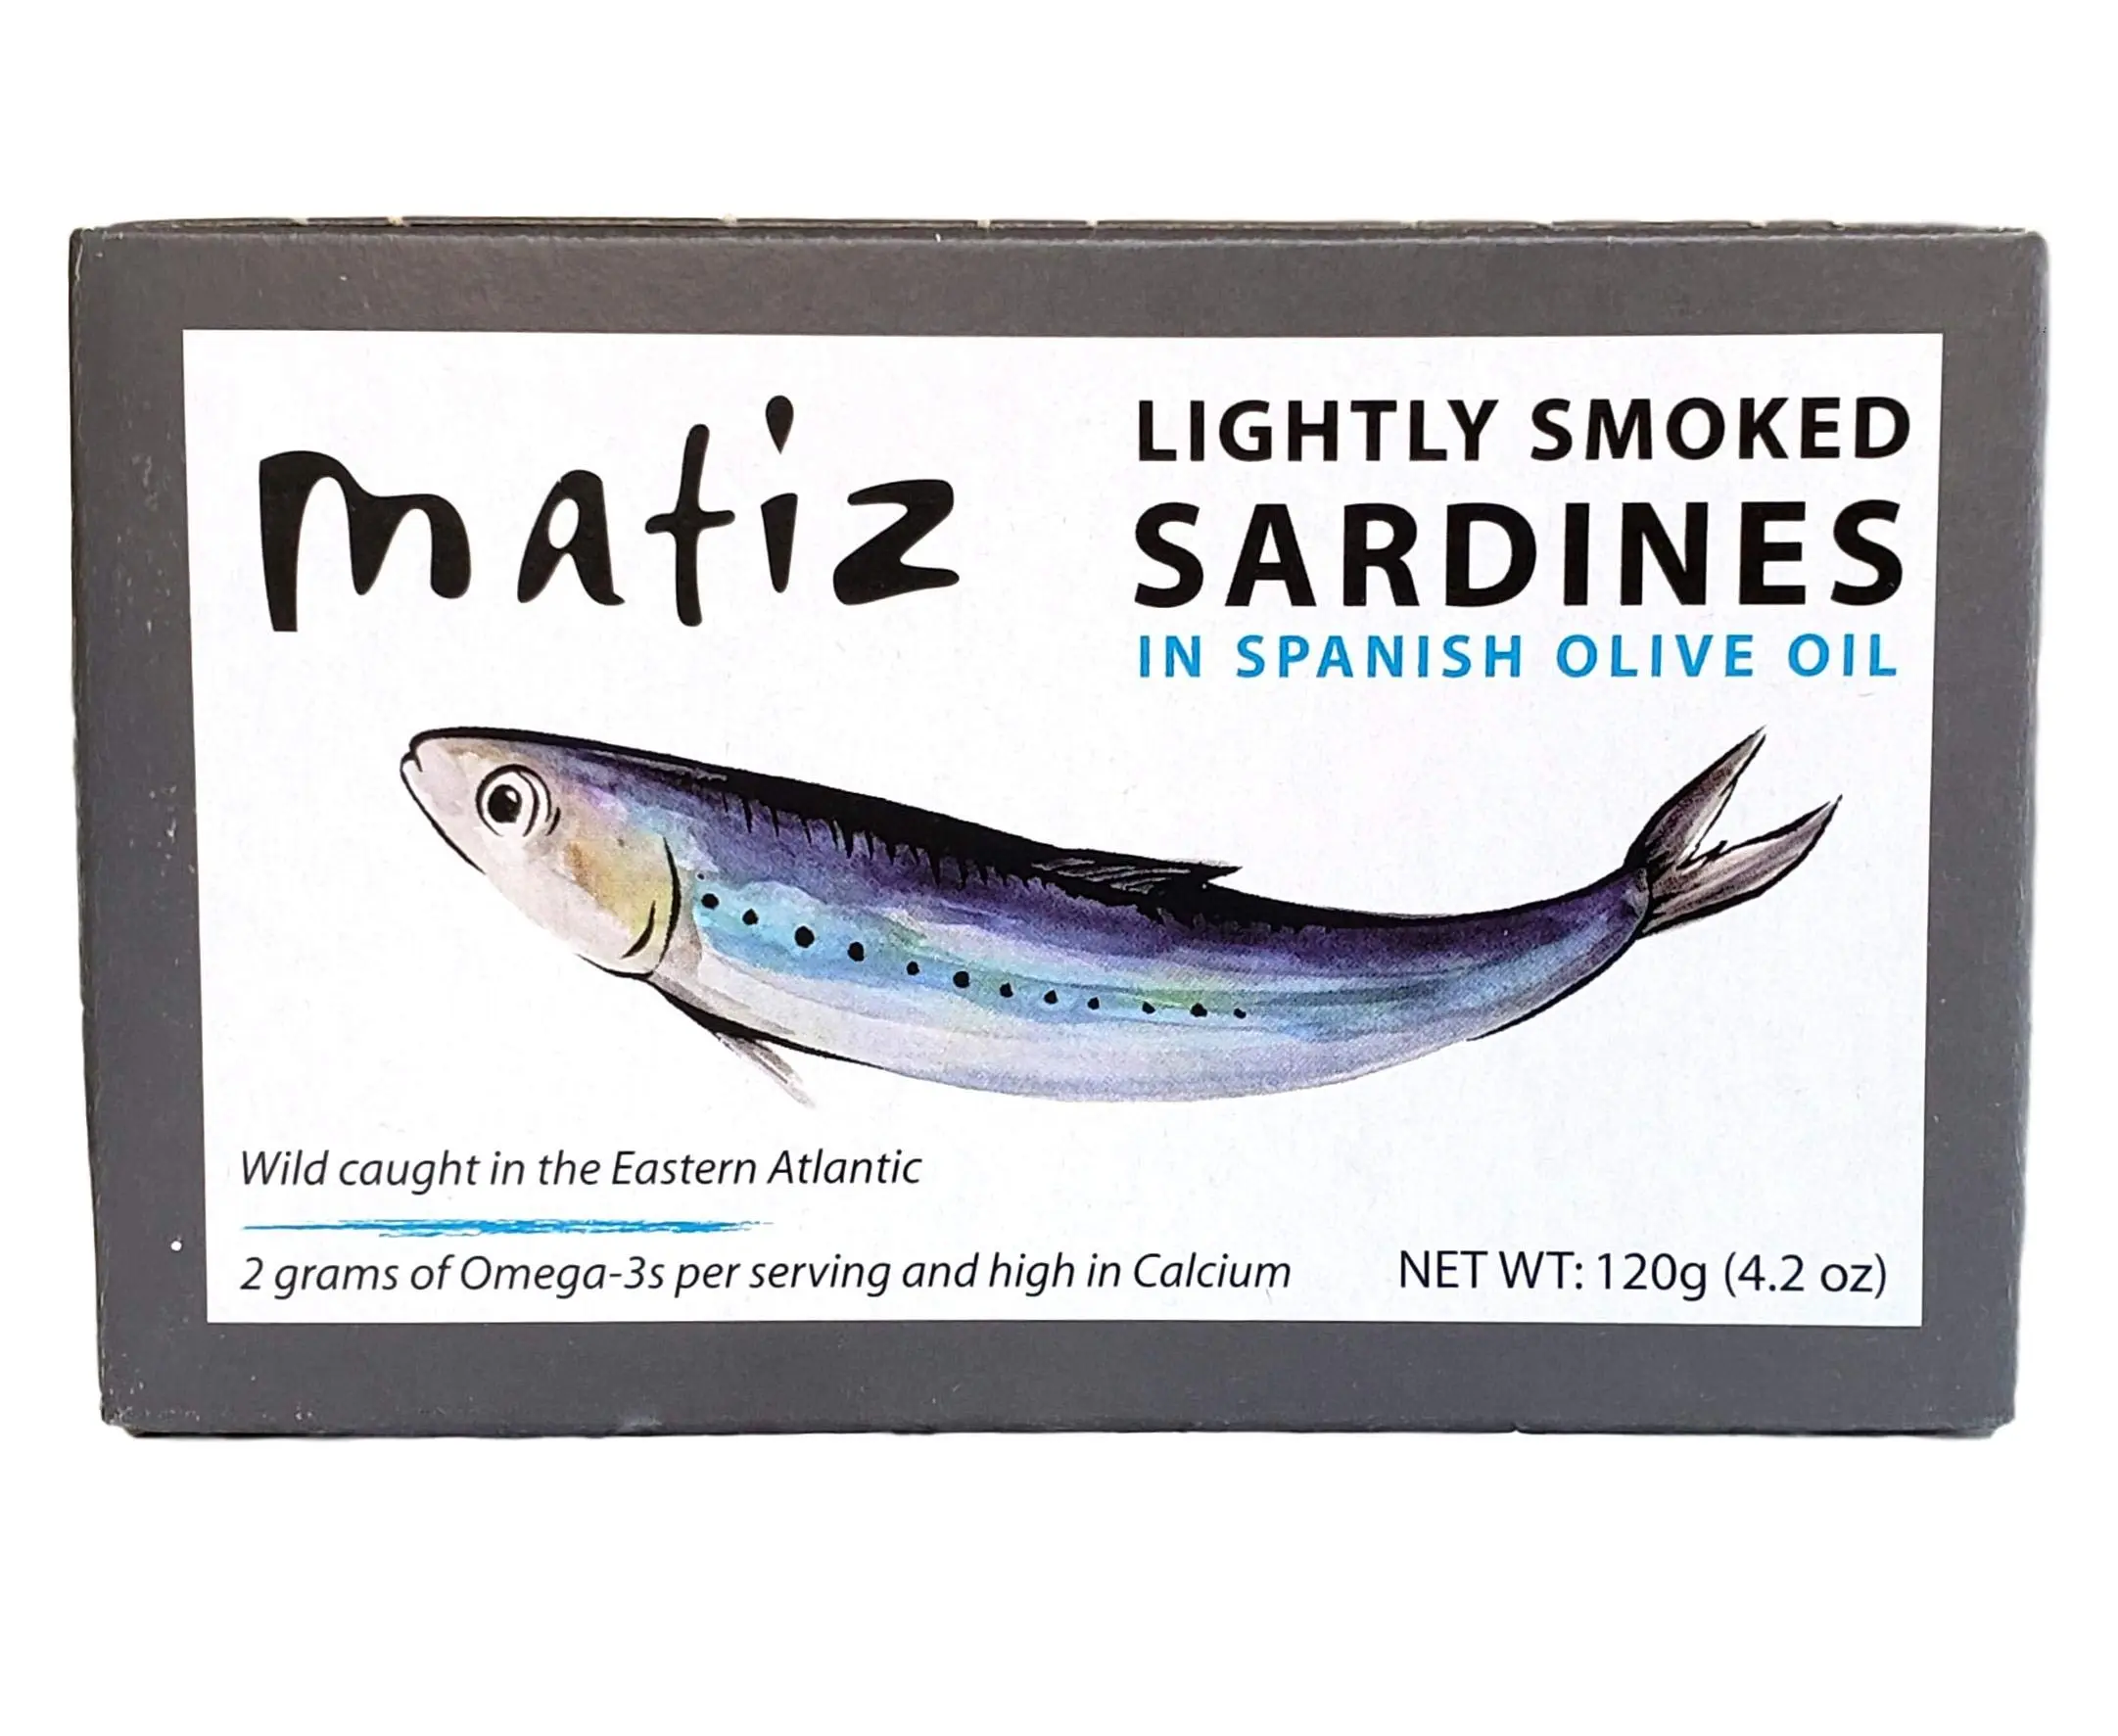 lightly smoked sardines - Are lightly smoked sardines healthy